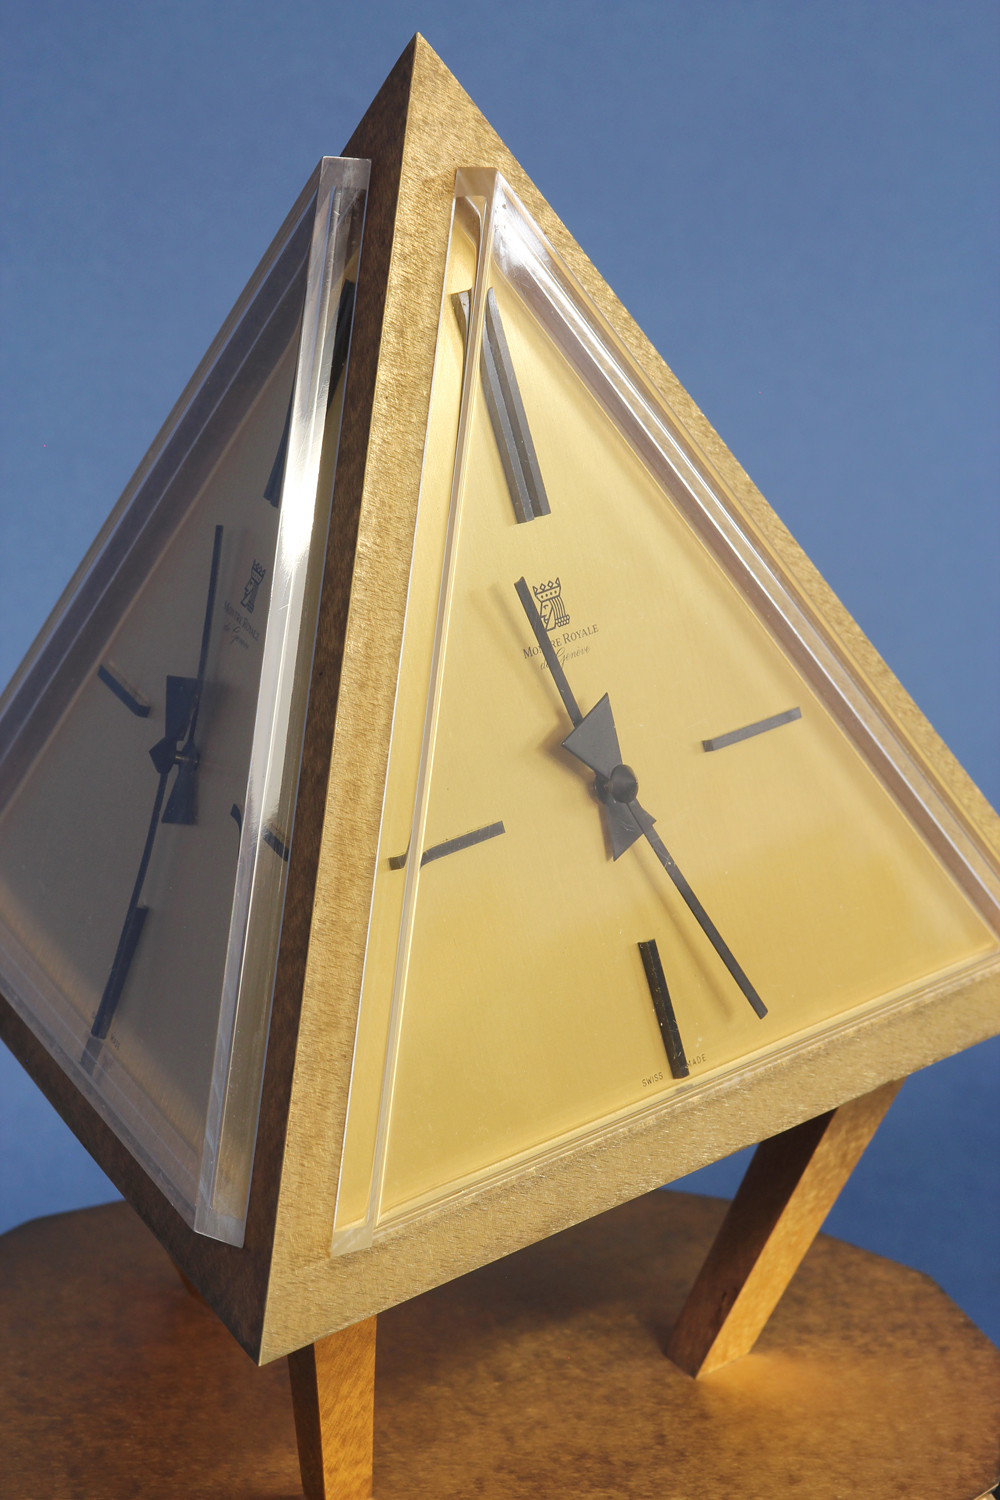 Montre Royale Solar Clock